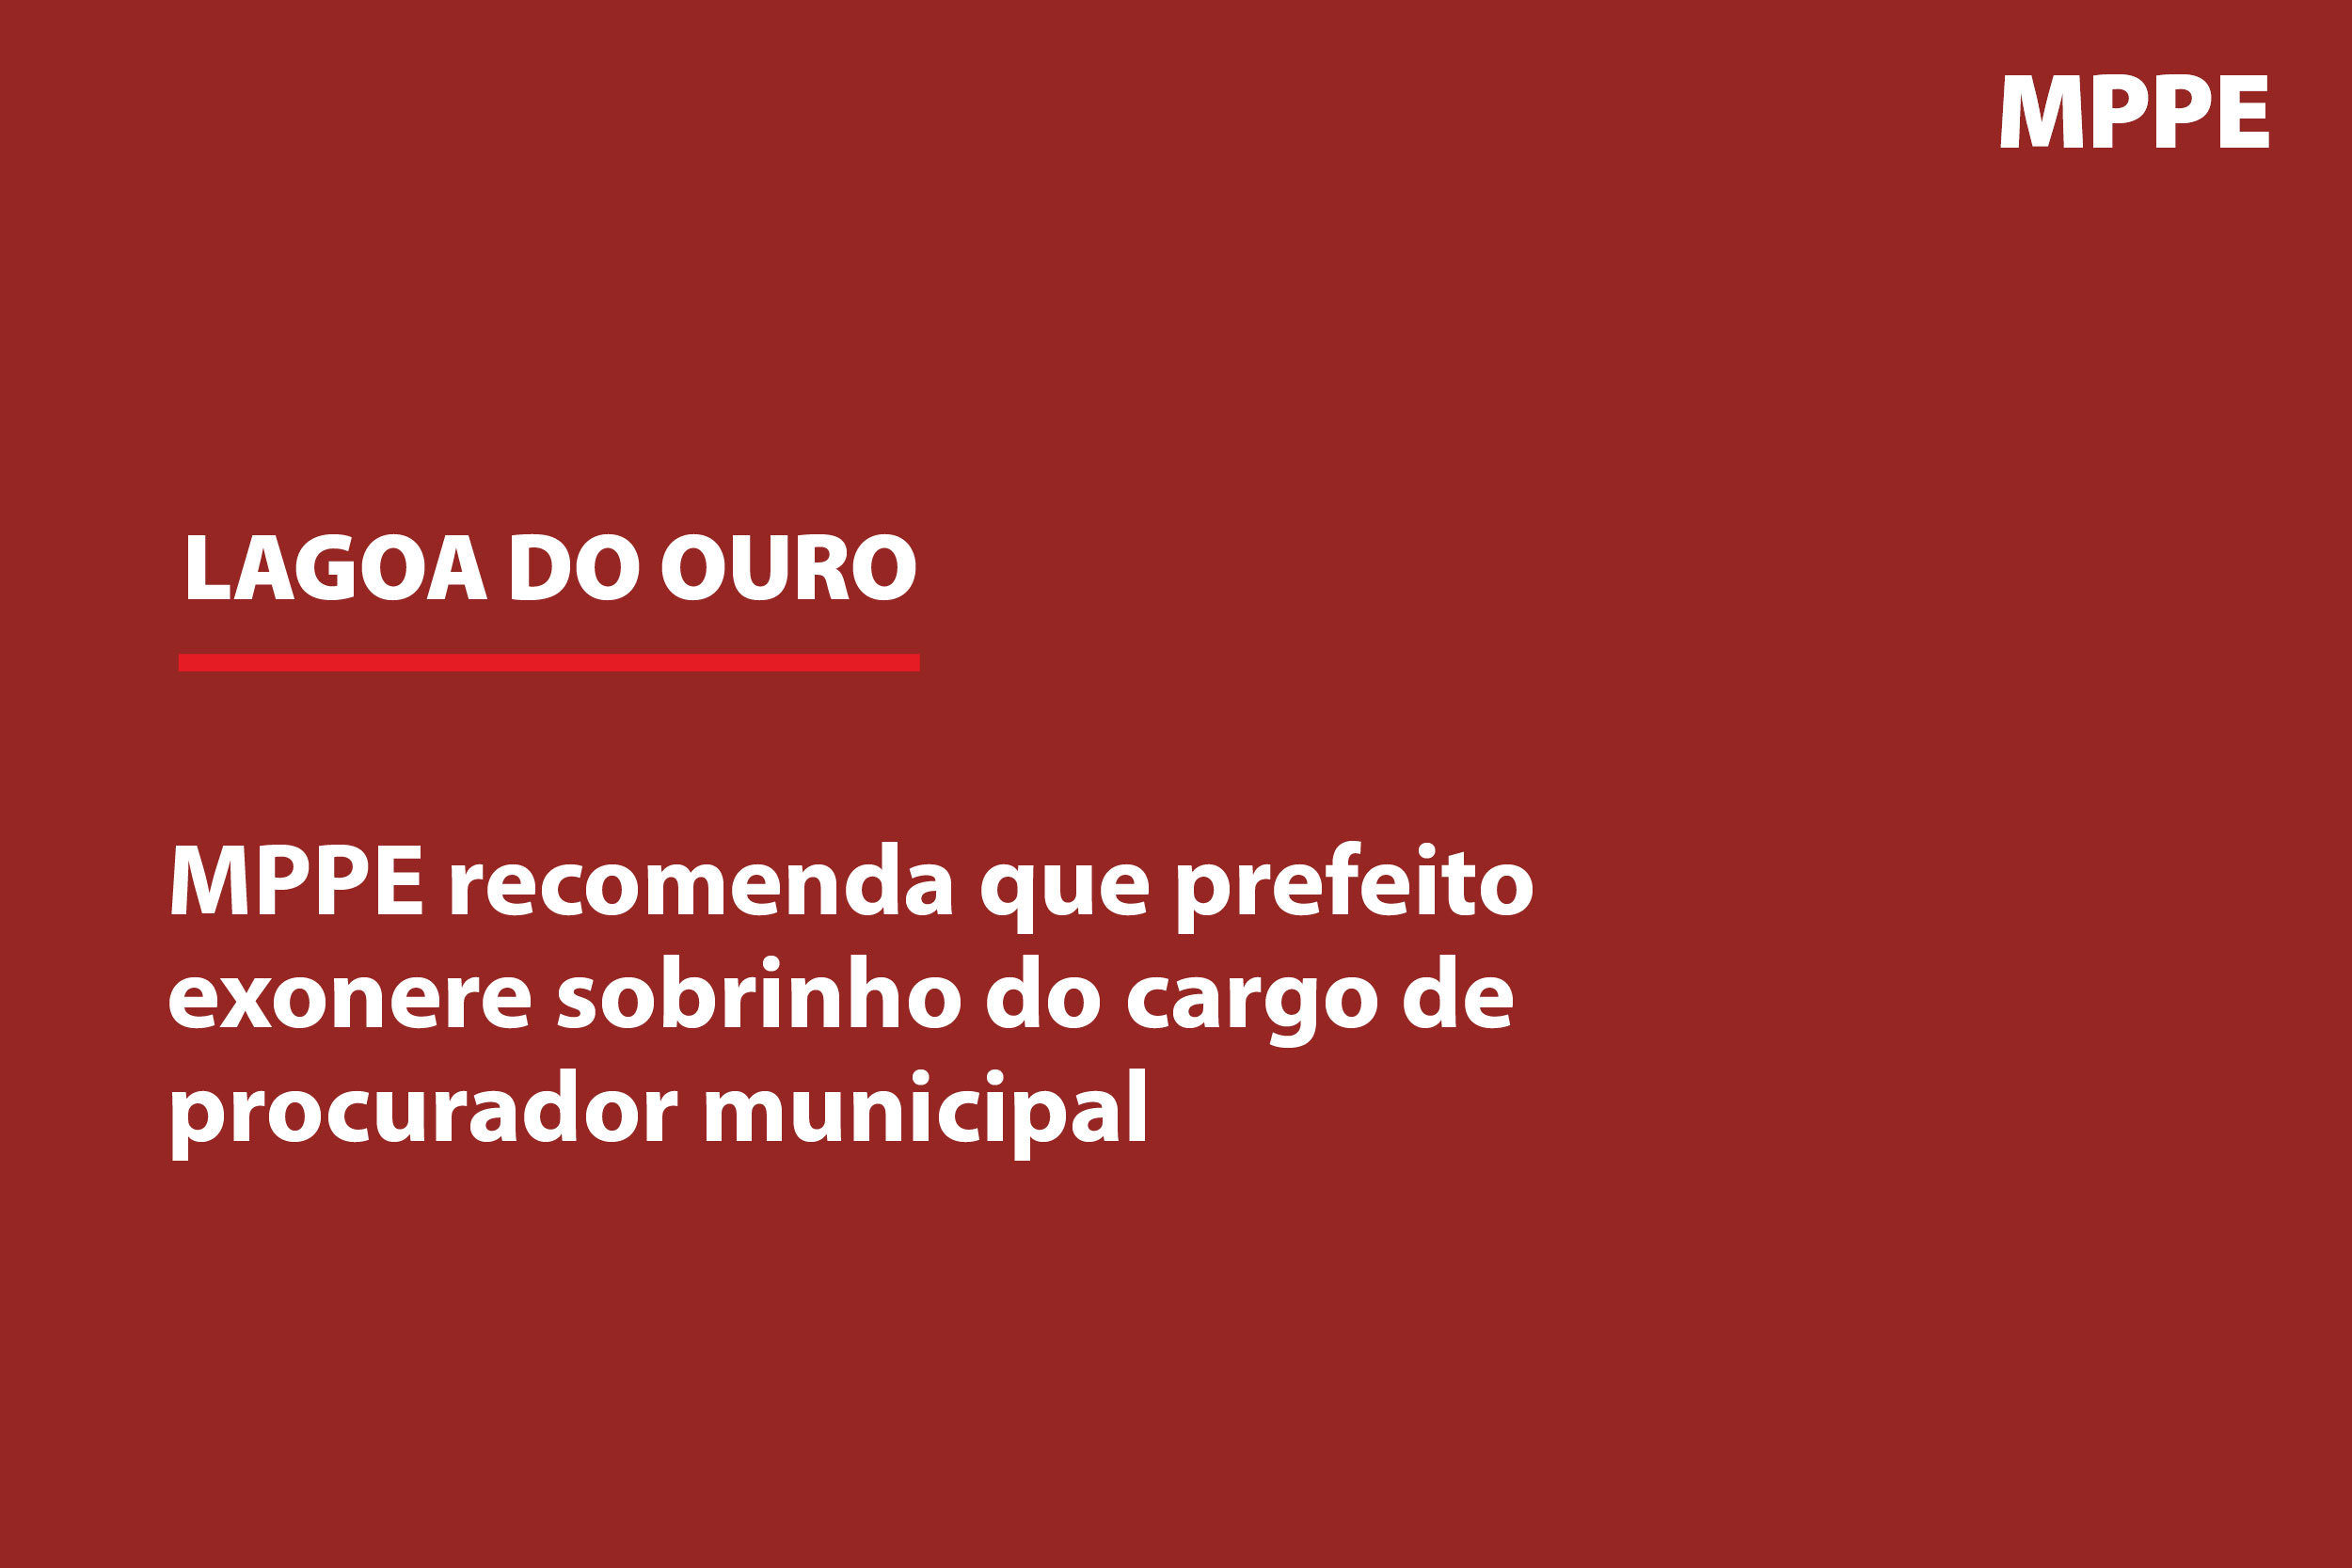 fundo vermelho com os dizeres LAGOA DO OURO: MPPE recomenda que prefeito exonere sobrinho do cargo de procurador municipal